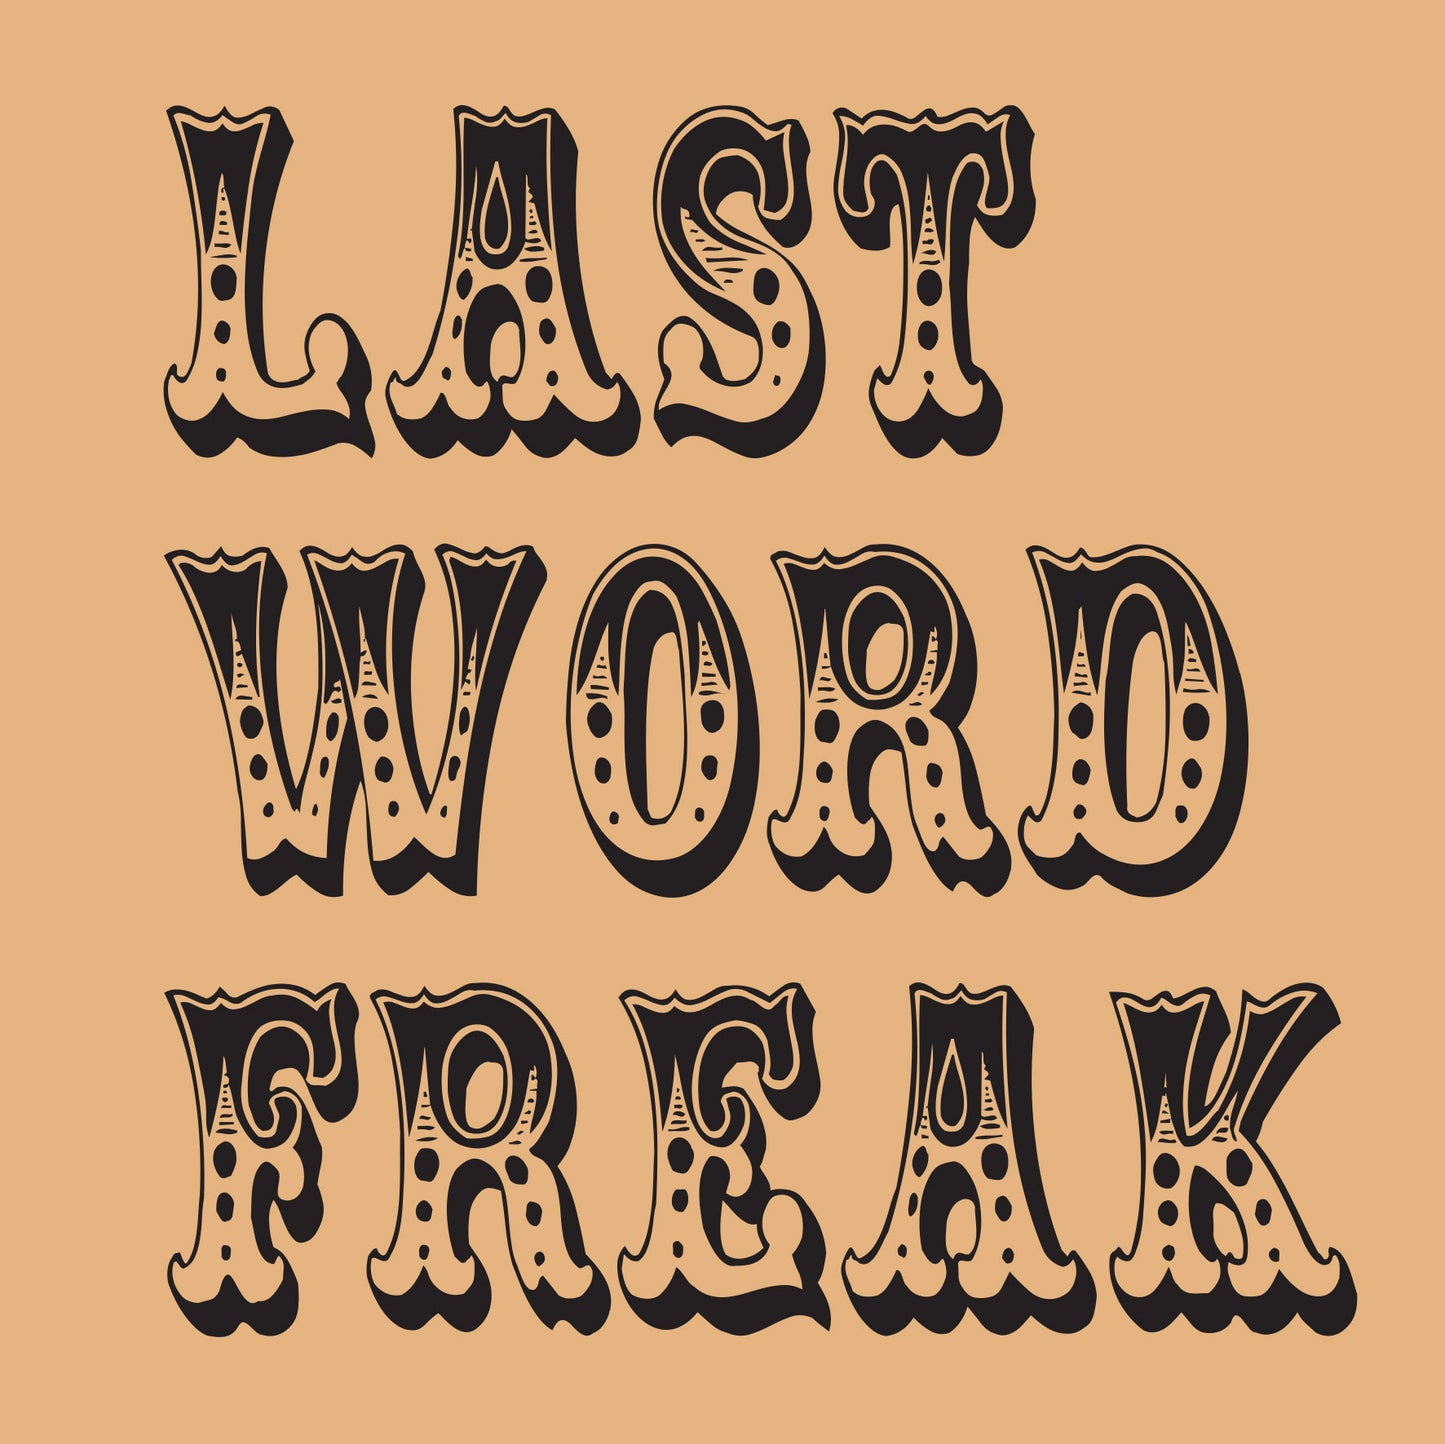 Last Word Freak Greetings Card (150x150 blank)